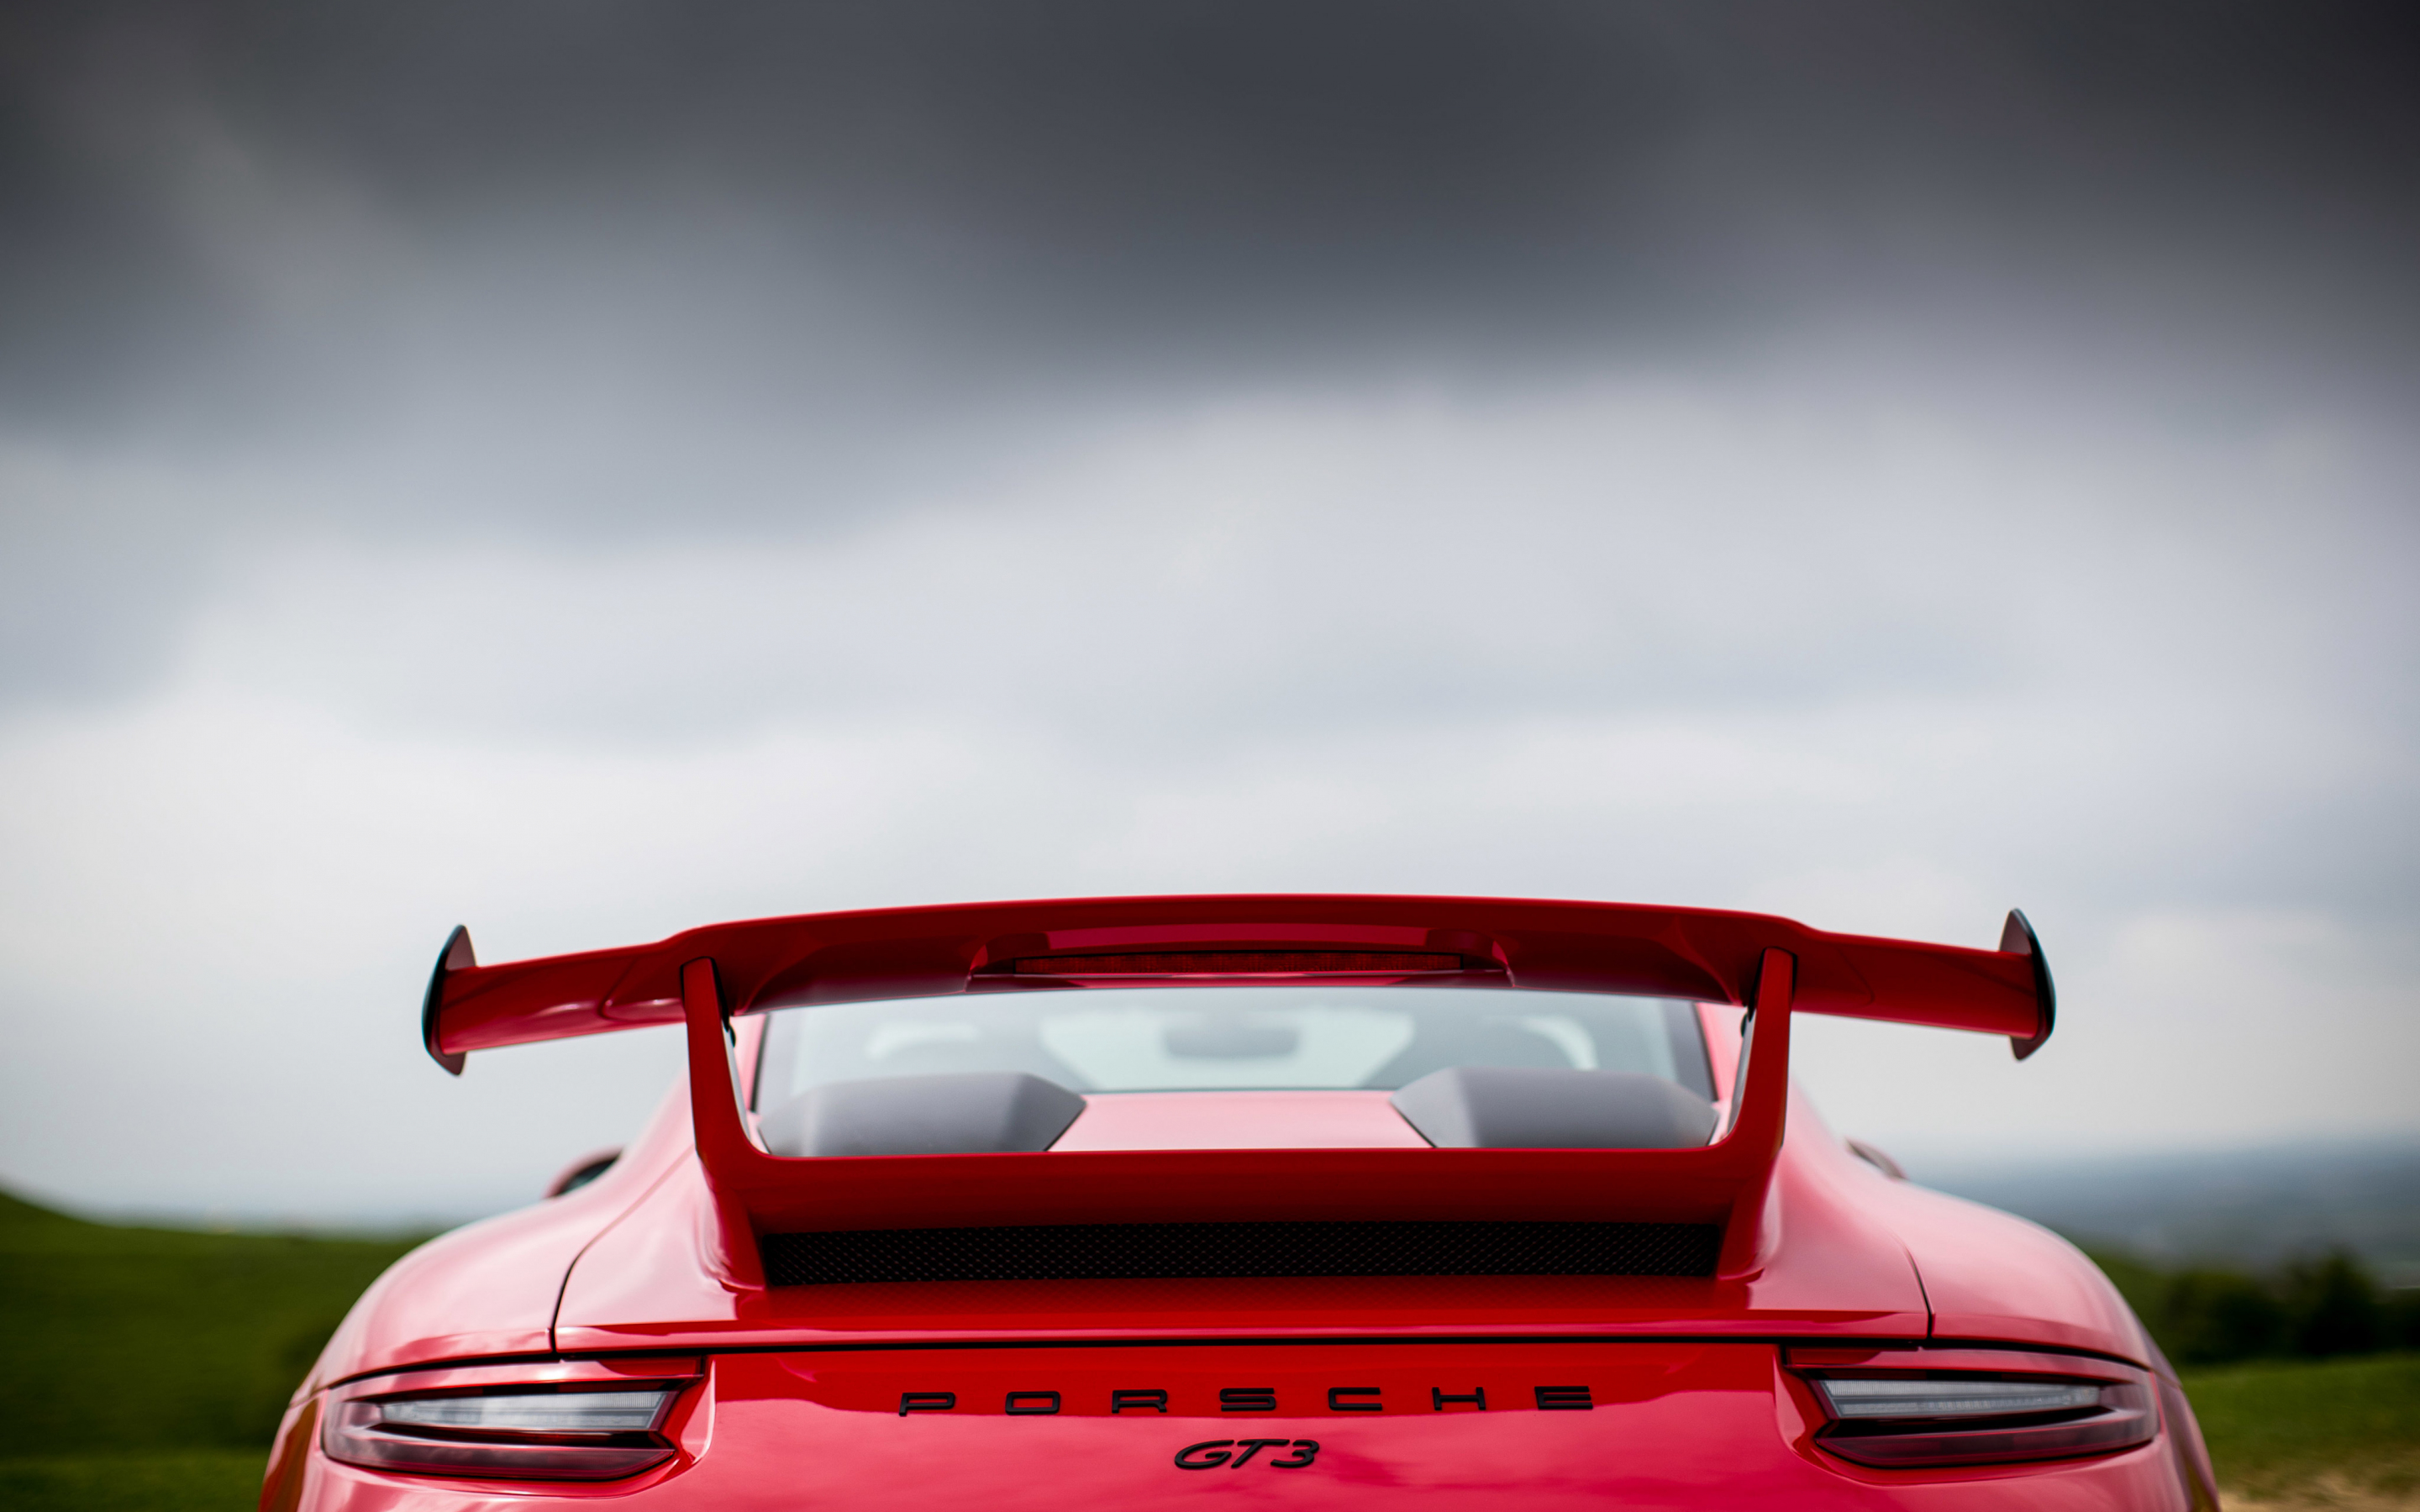 2018 Porsche 911 GT3, rear view, red car, 2880x1800 wallpaper